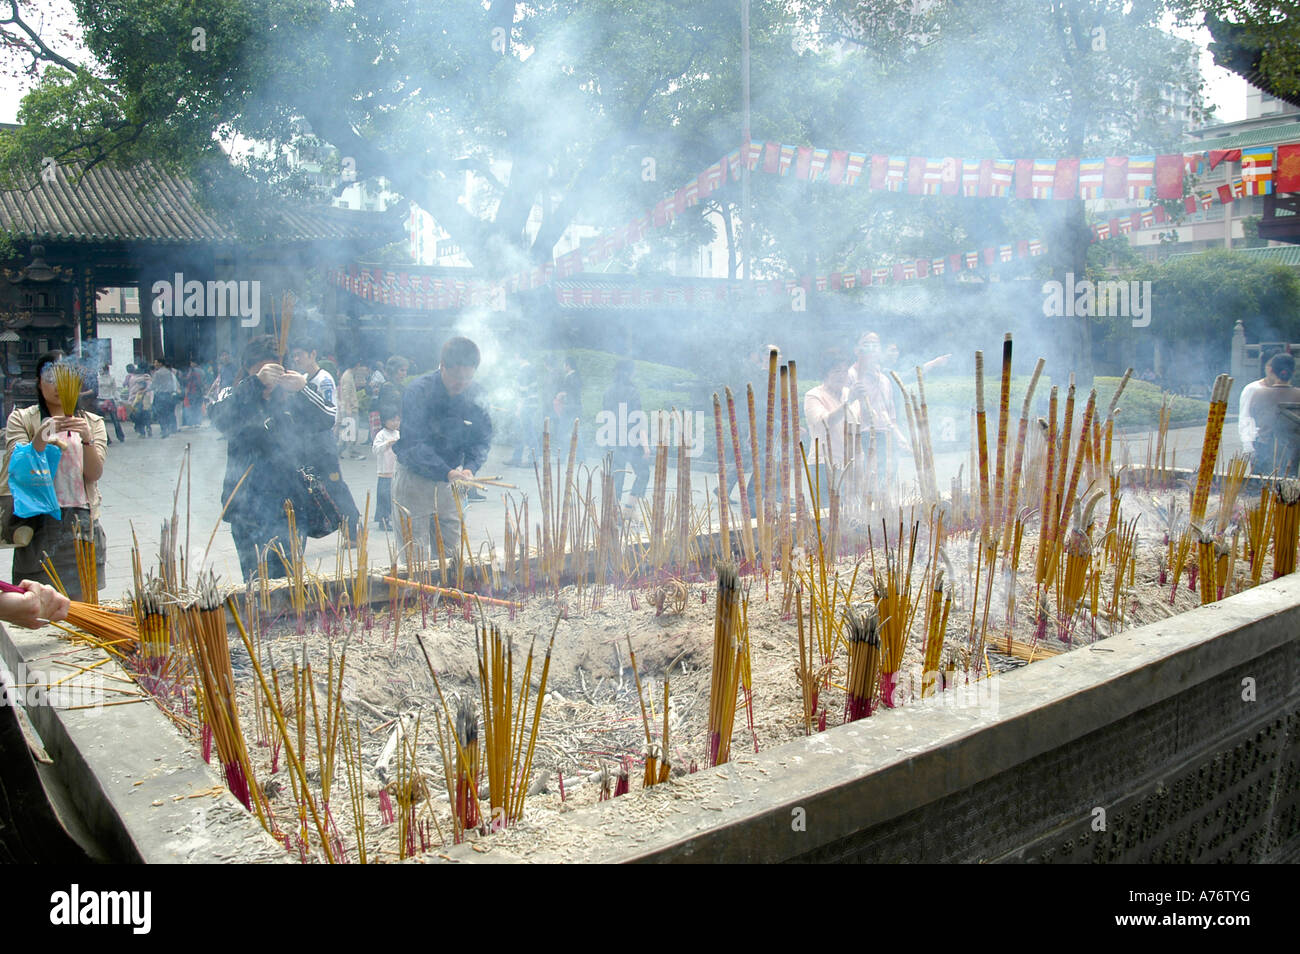 Incenso stick offerte in un tempio buddhistic in Guanzhou, Cina Foto Stock